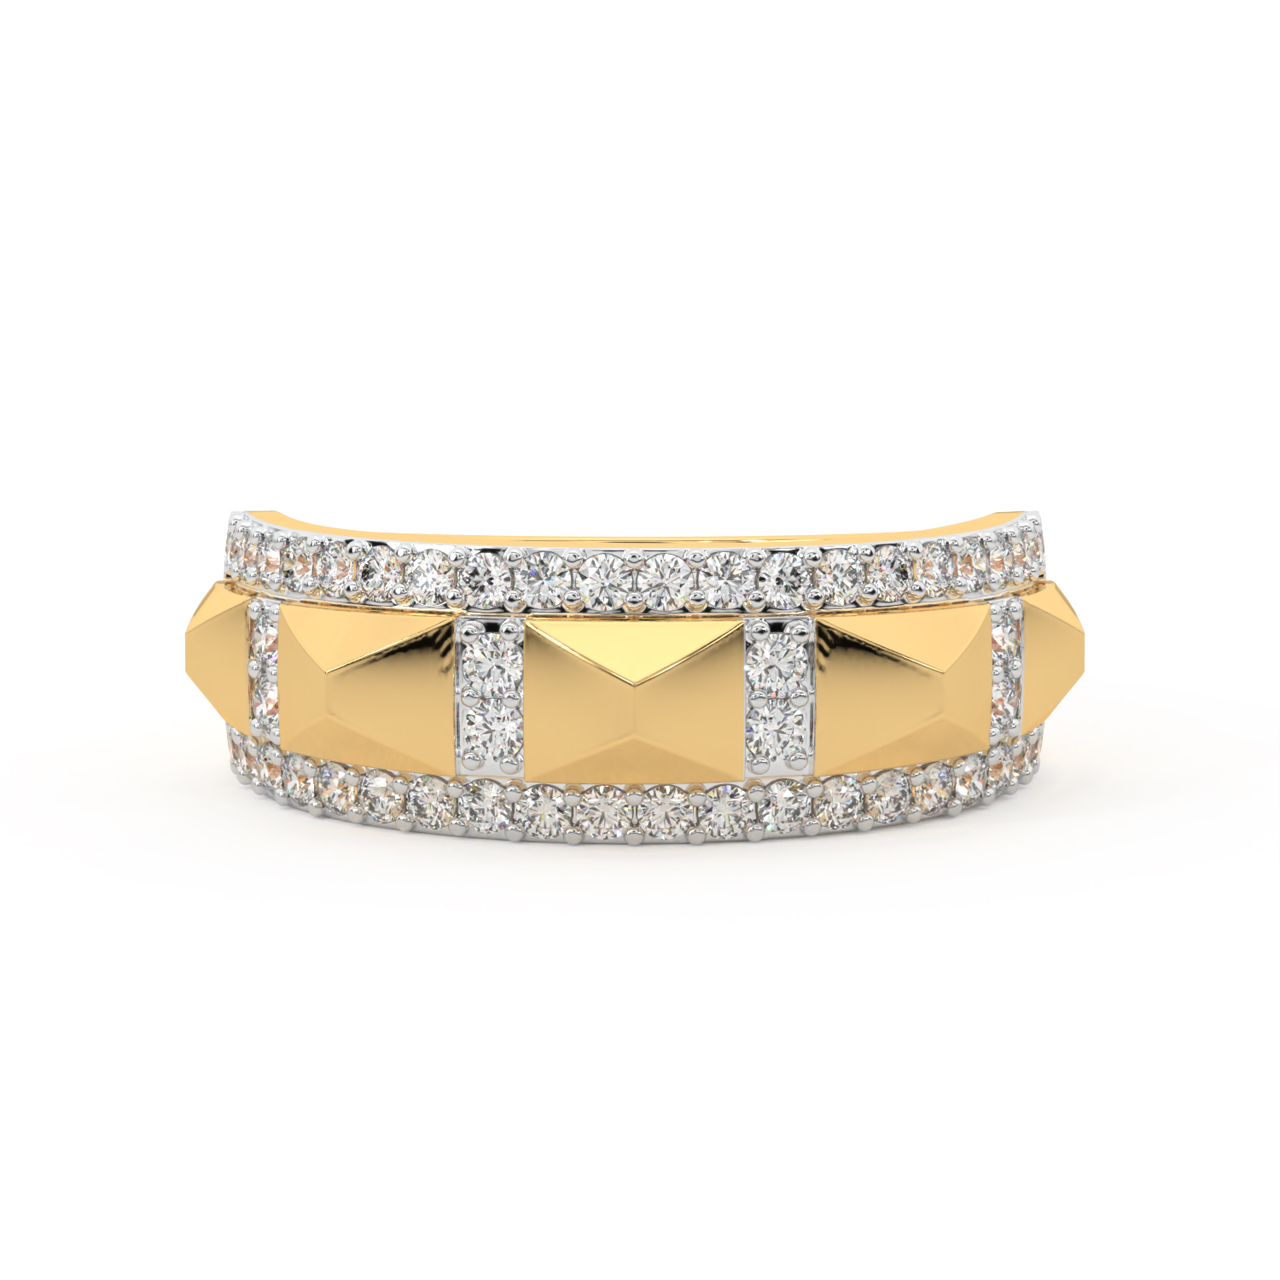 Hilltop Design Diamond Ring For Men